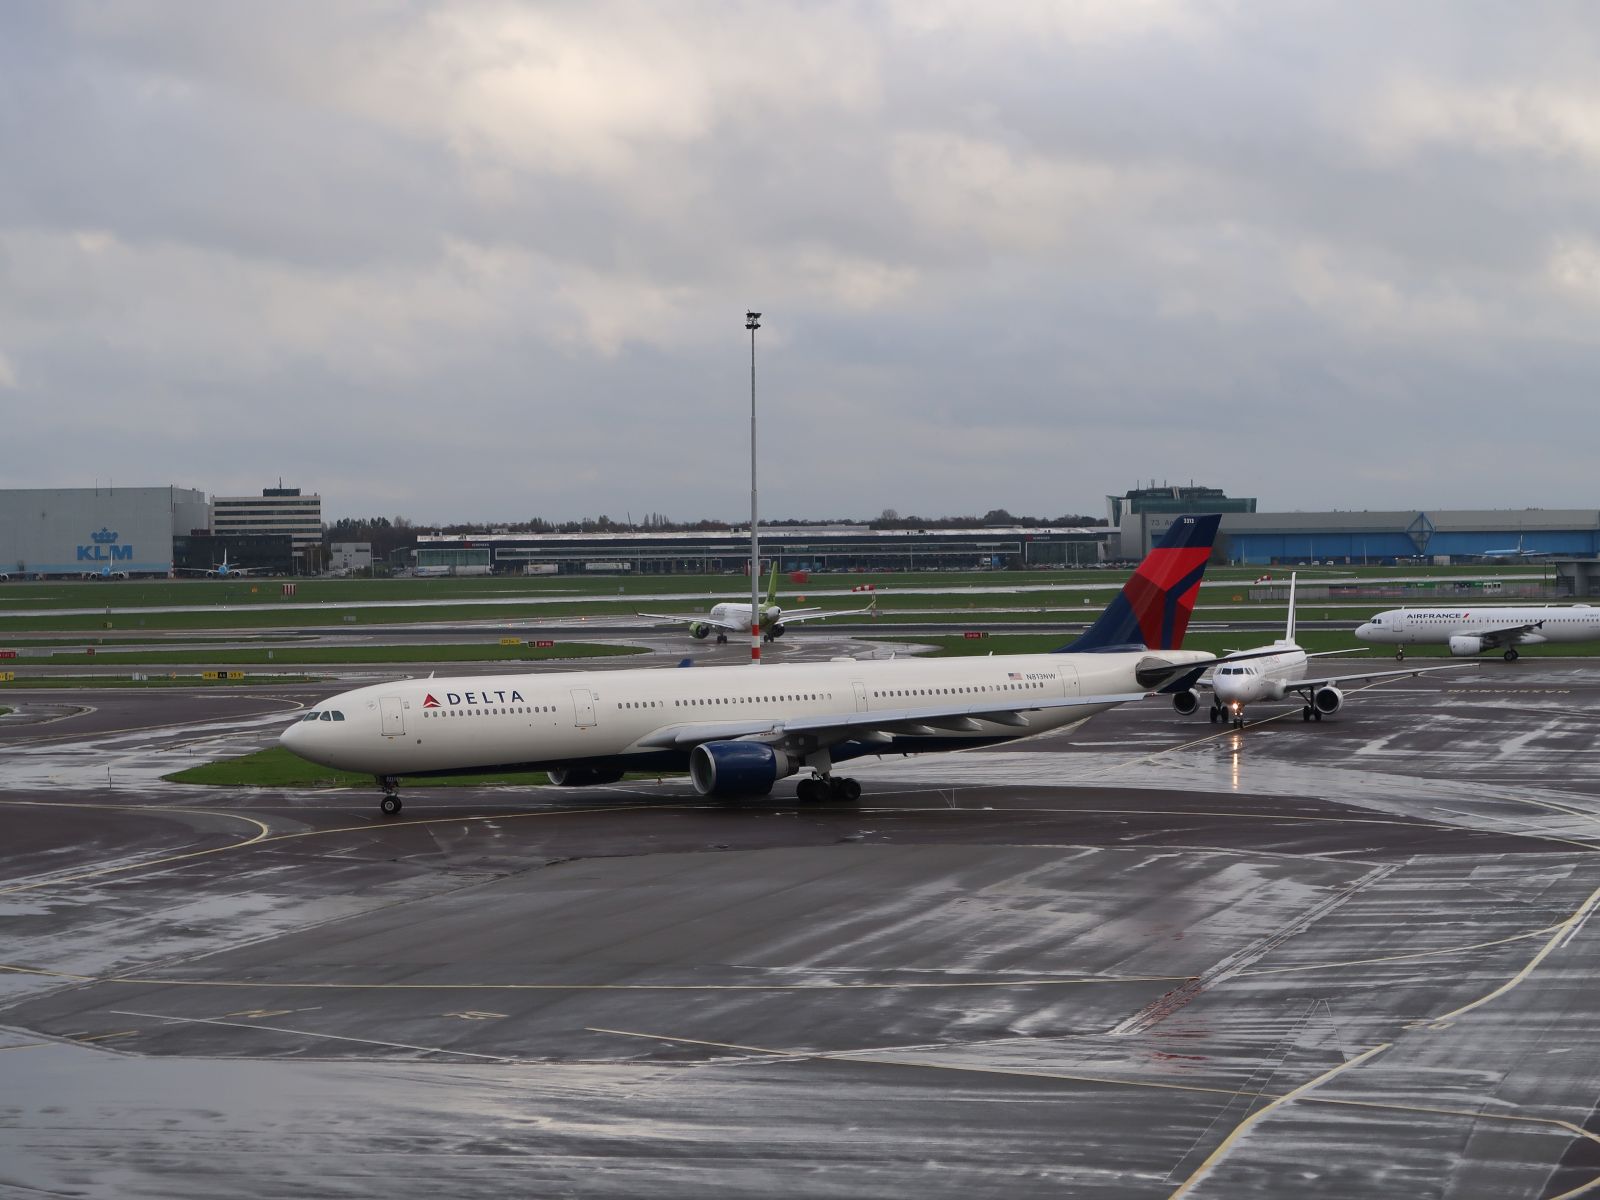 N813NW Delta Airlines Airbus A330-323X. Erstflug dieses Flugzeugs war am 30-11-2006. Flughafen Schiphol Amsterdam, Niederlande 13-11-2023. 

N813NW Delta Airlines Airbus A330-323X. Eerste vlucht van dit vliegtuig was op 30-11-2006. Luchthaven Schiphol 13-11-2023.